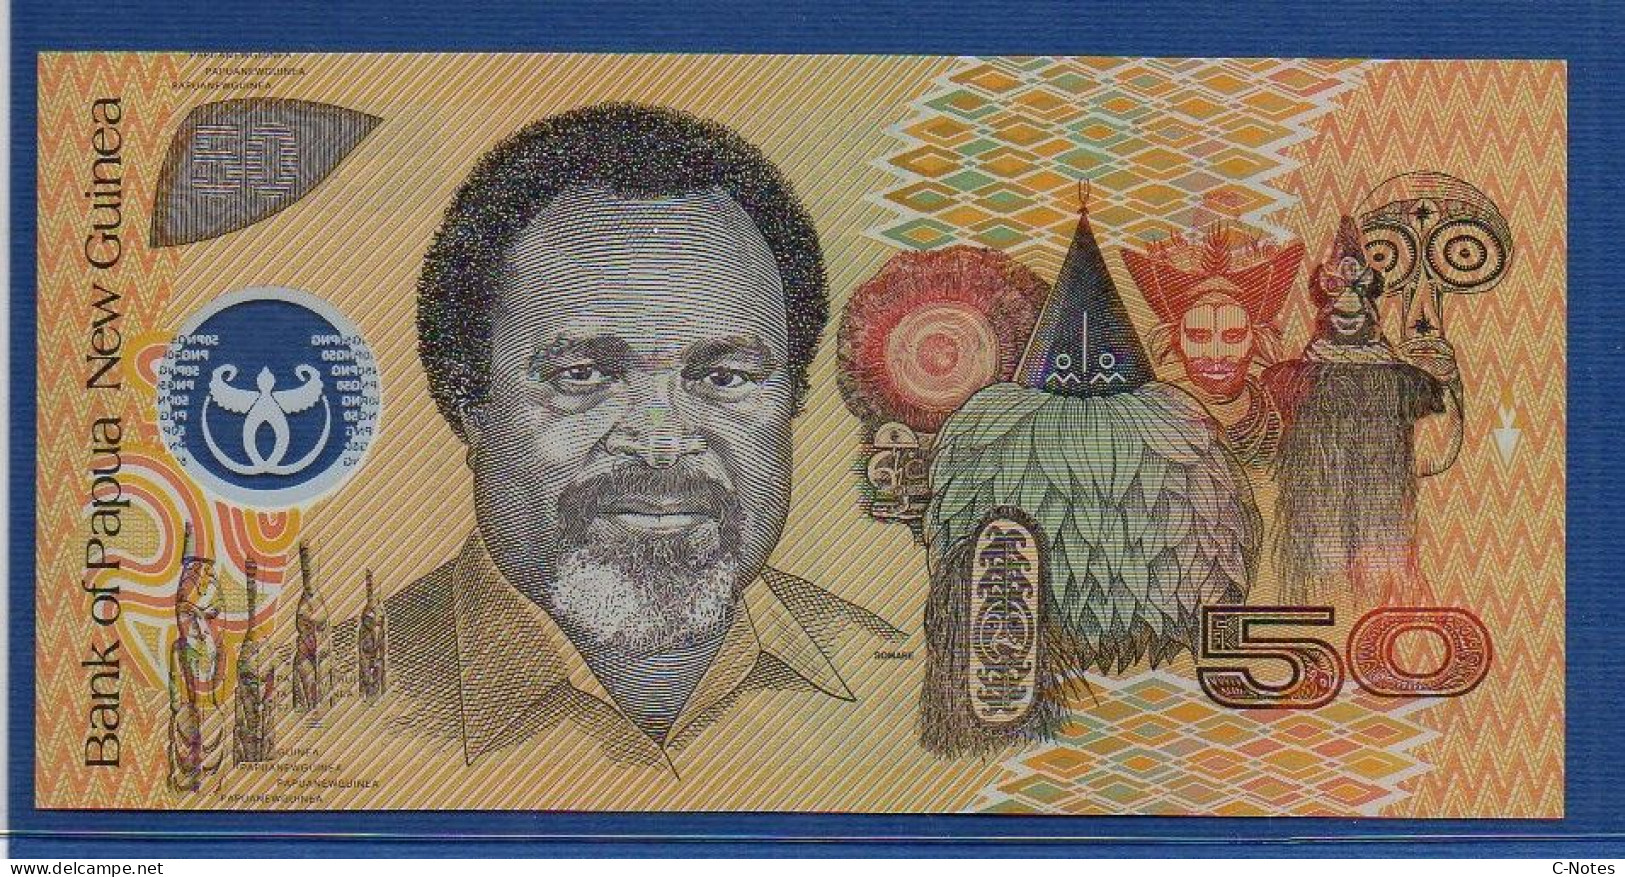 PAPUA NEW GUINEA - P.18a – 50 KINA 1999 UNC, S/n MV 99 188 847 - Papouasie-Nouvelle-Guinée